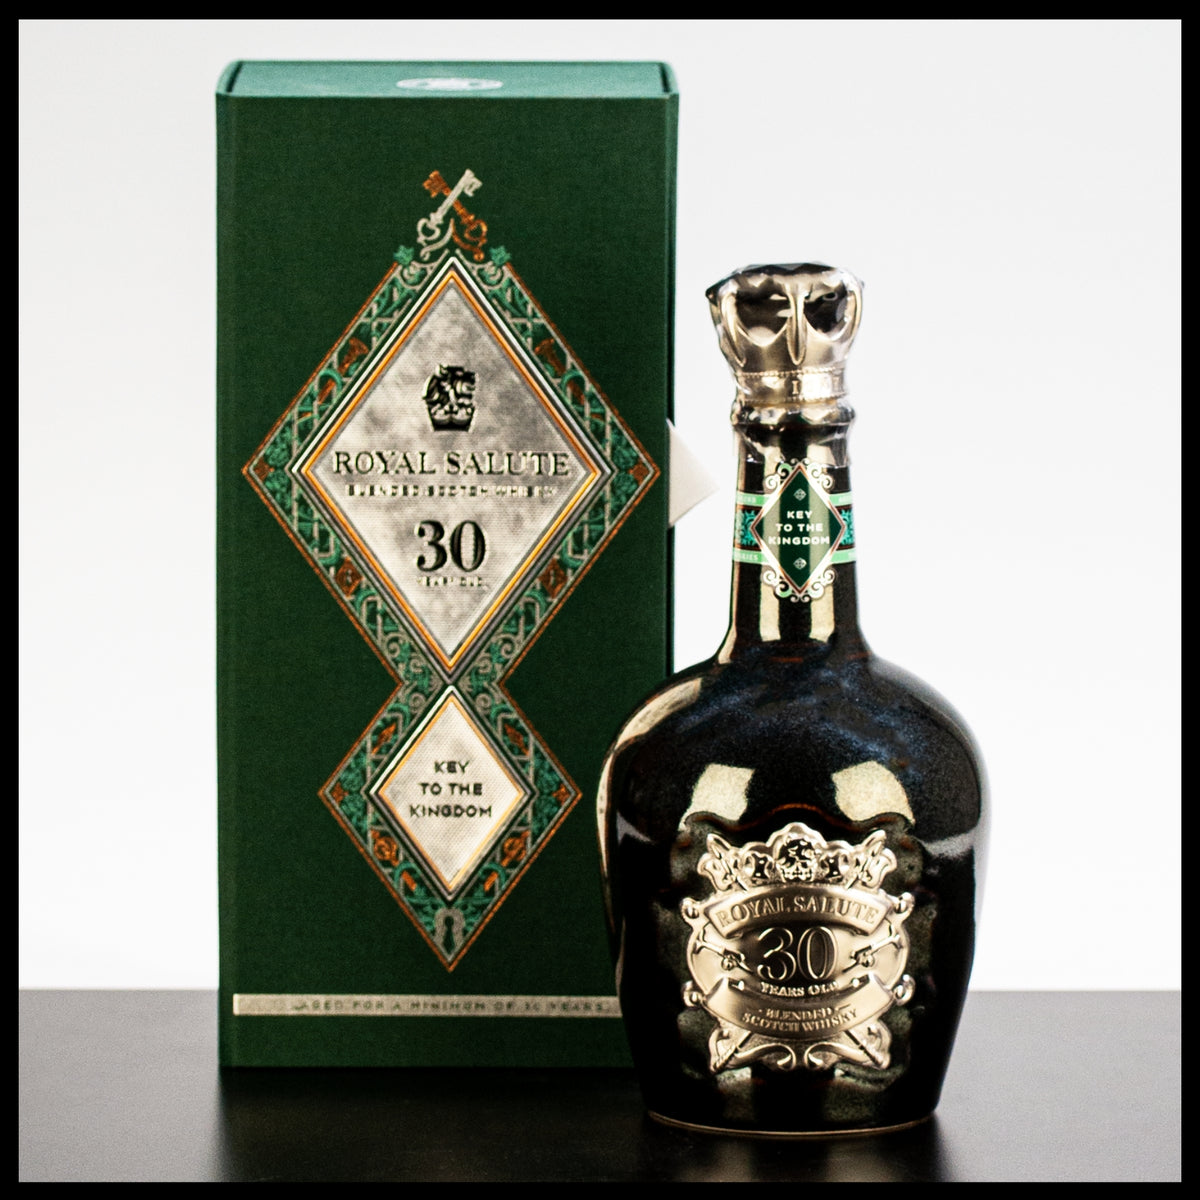 Chivas Regal 30 YO Royal Salute "Key to the Kingdom" Whisky 0,5L - 40% Vol. - Trinklusiv